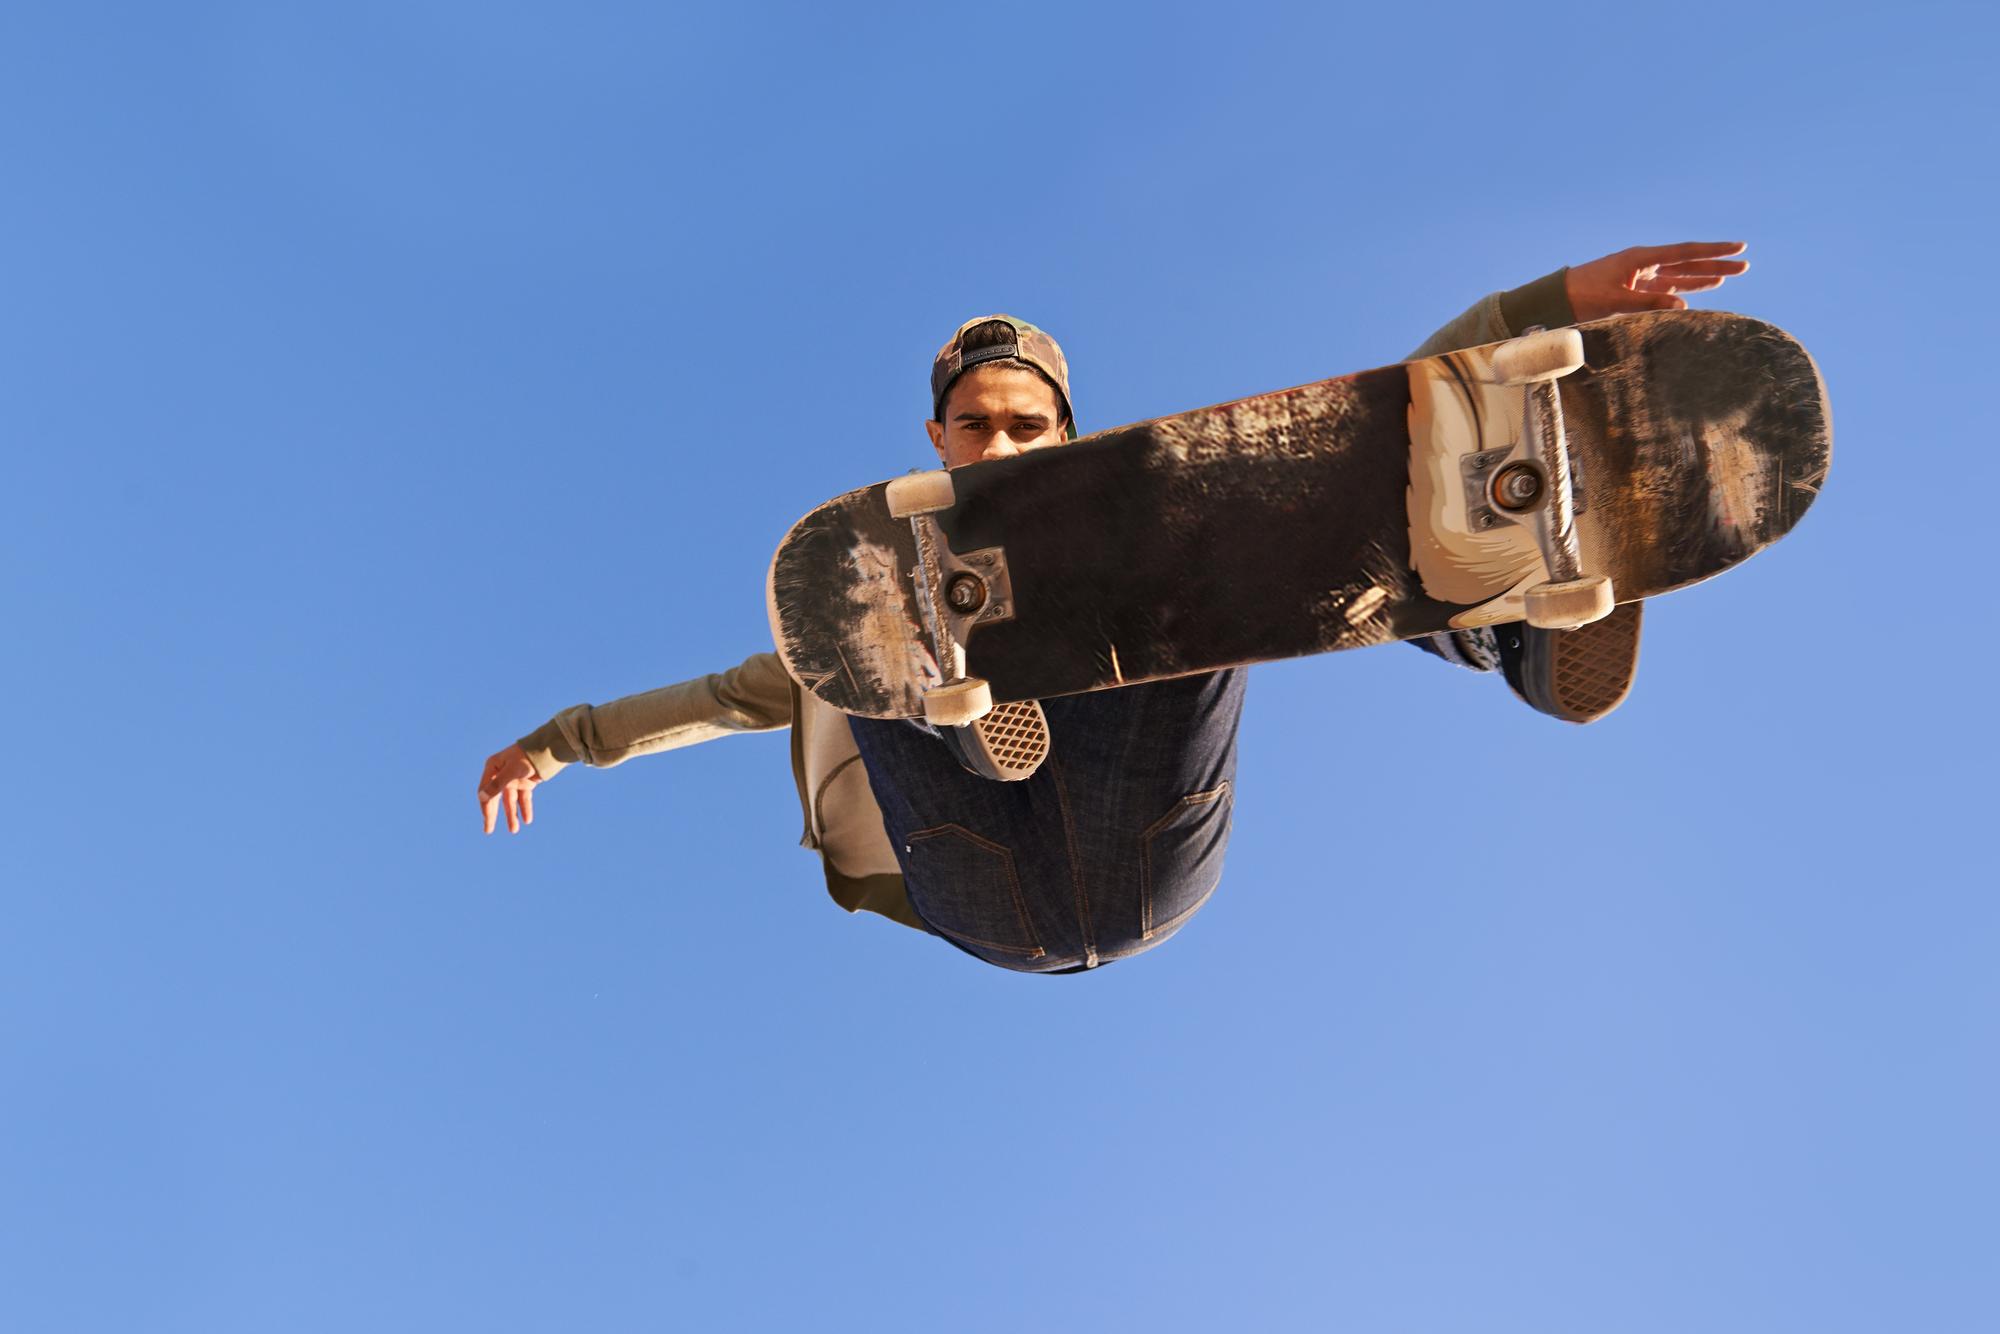 Photo avez-vous vu les compétences sur celui-ci un jeune homme faisant des tours sur son skateboard au skate park